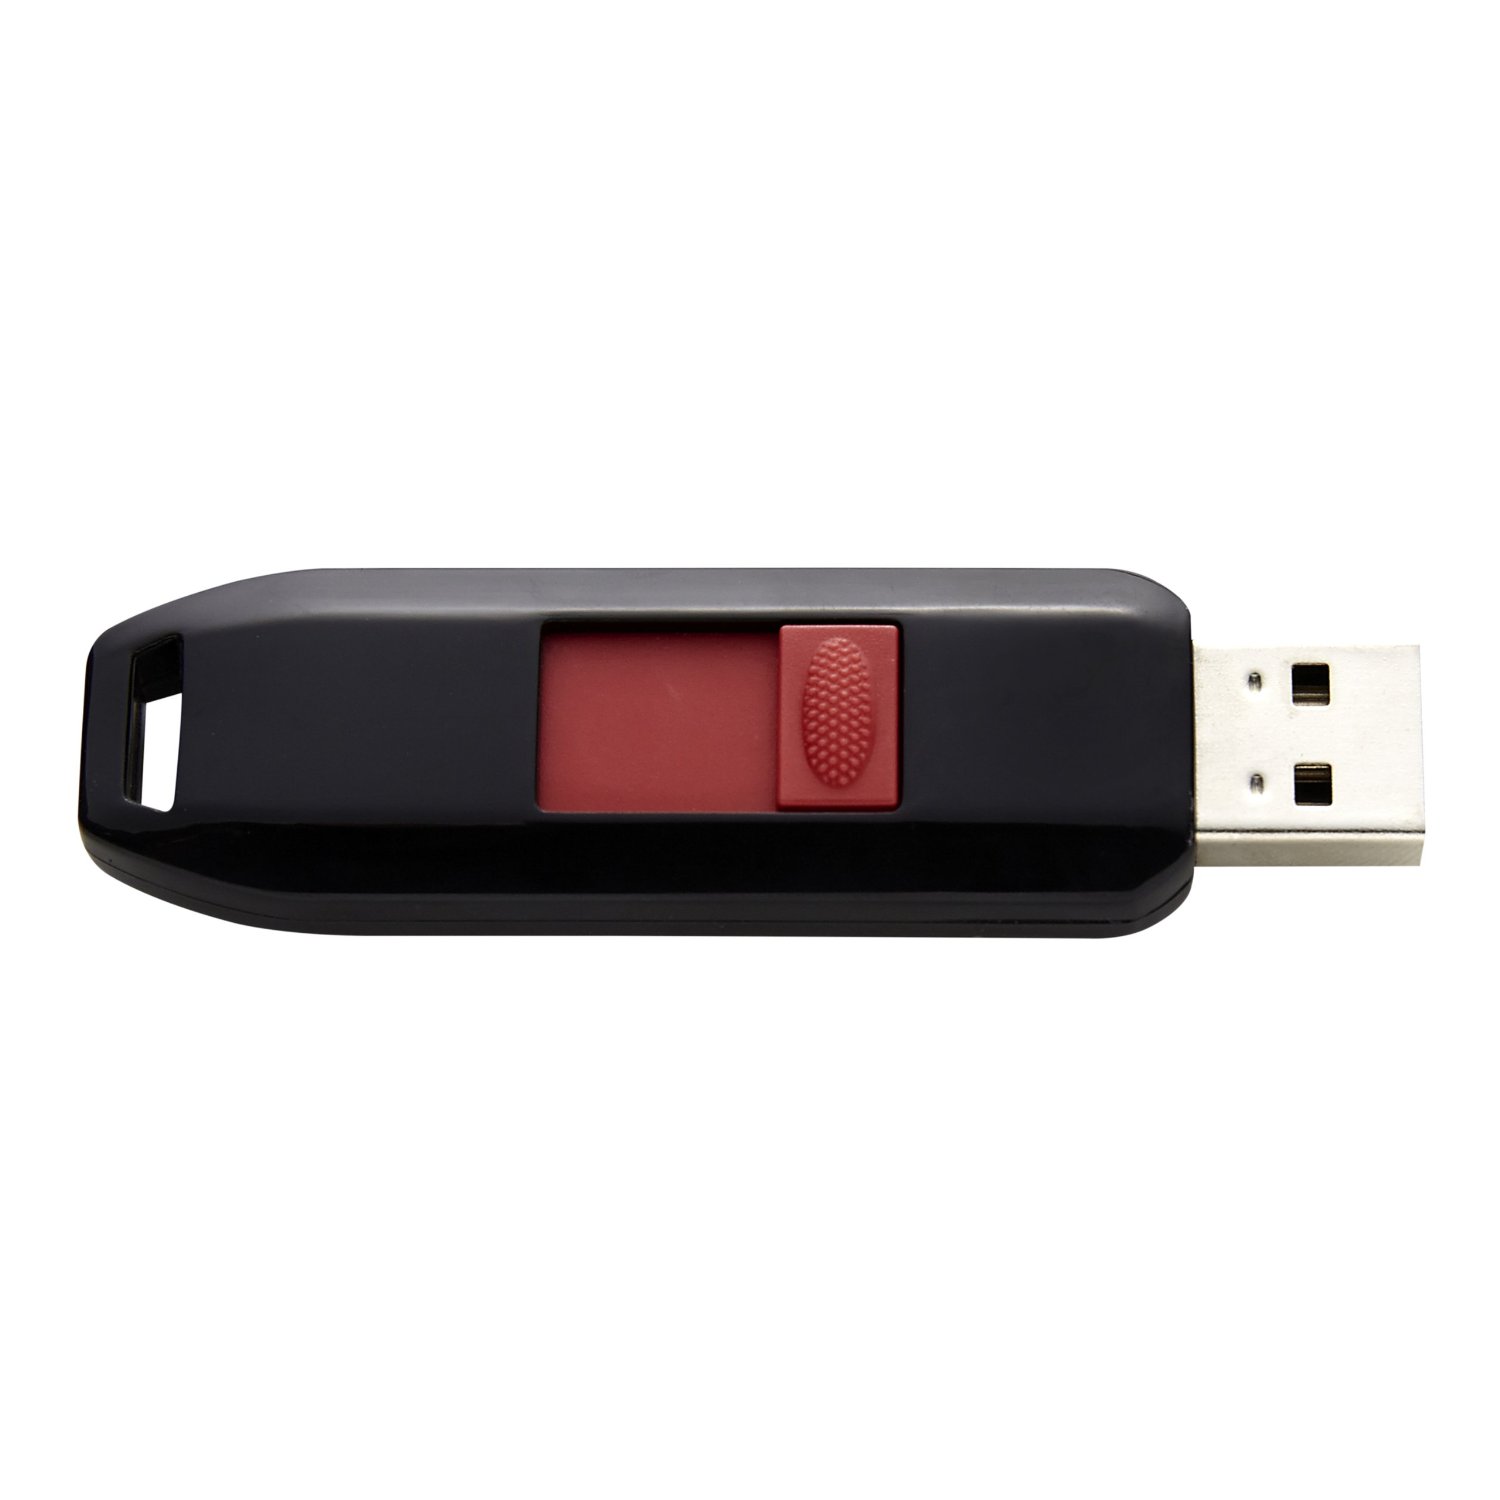 Intenso Business Line USB 2.0 Stick 64GB black/red USB Flash atmiņa